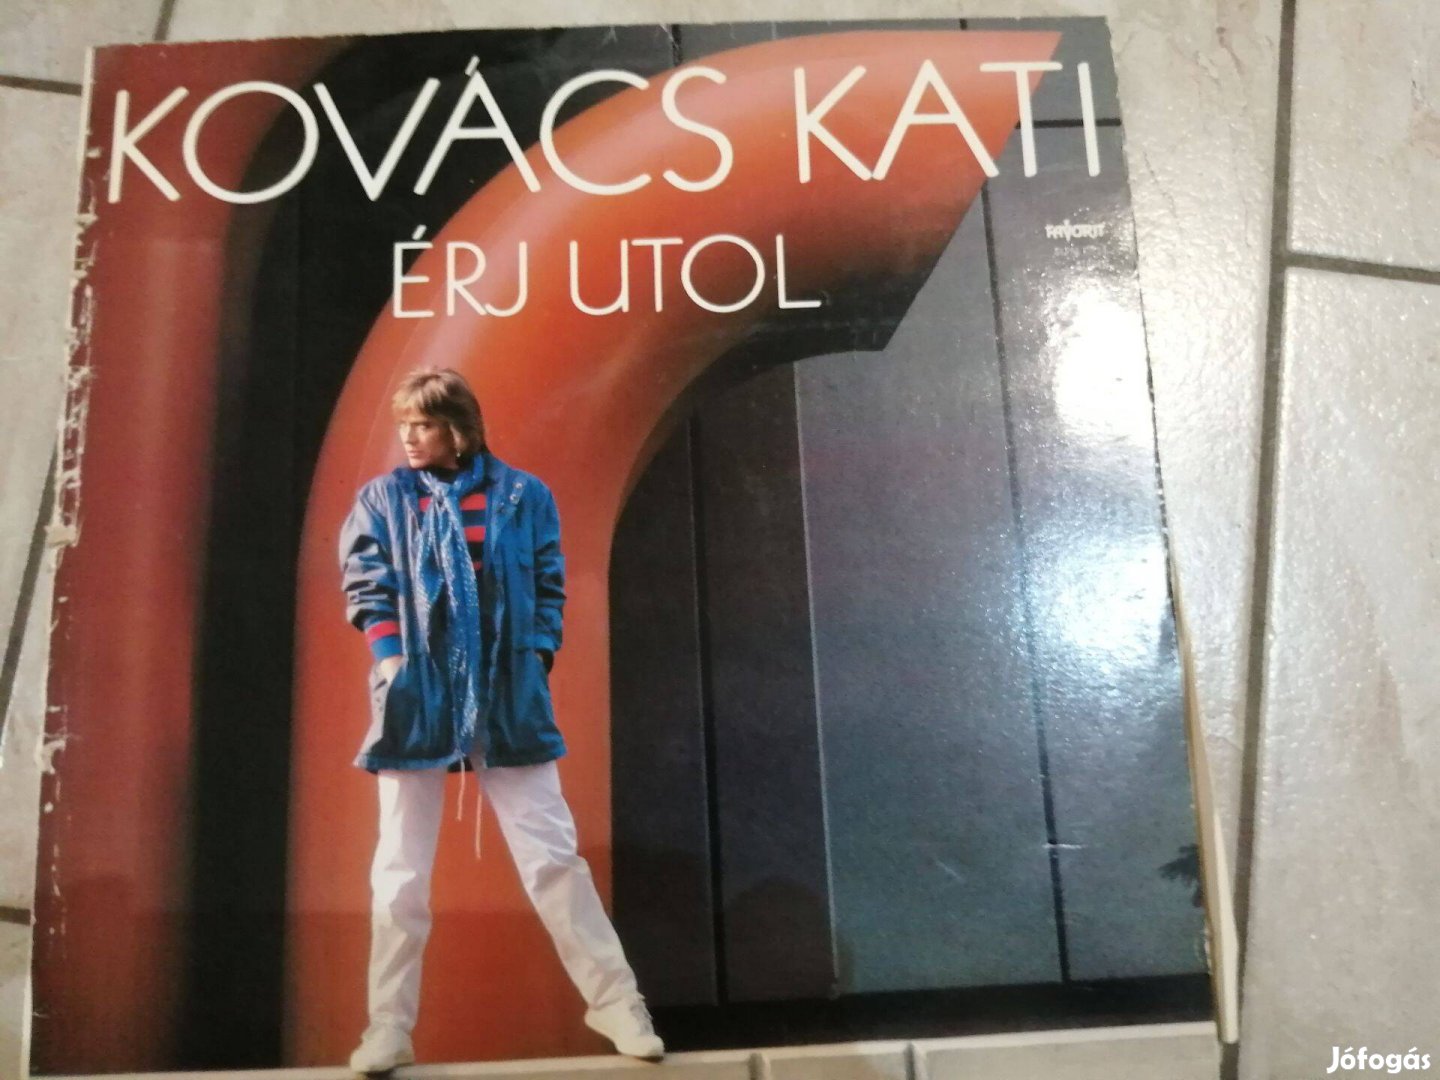 Kovács Kati -bakelit lemez